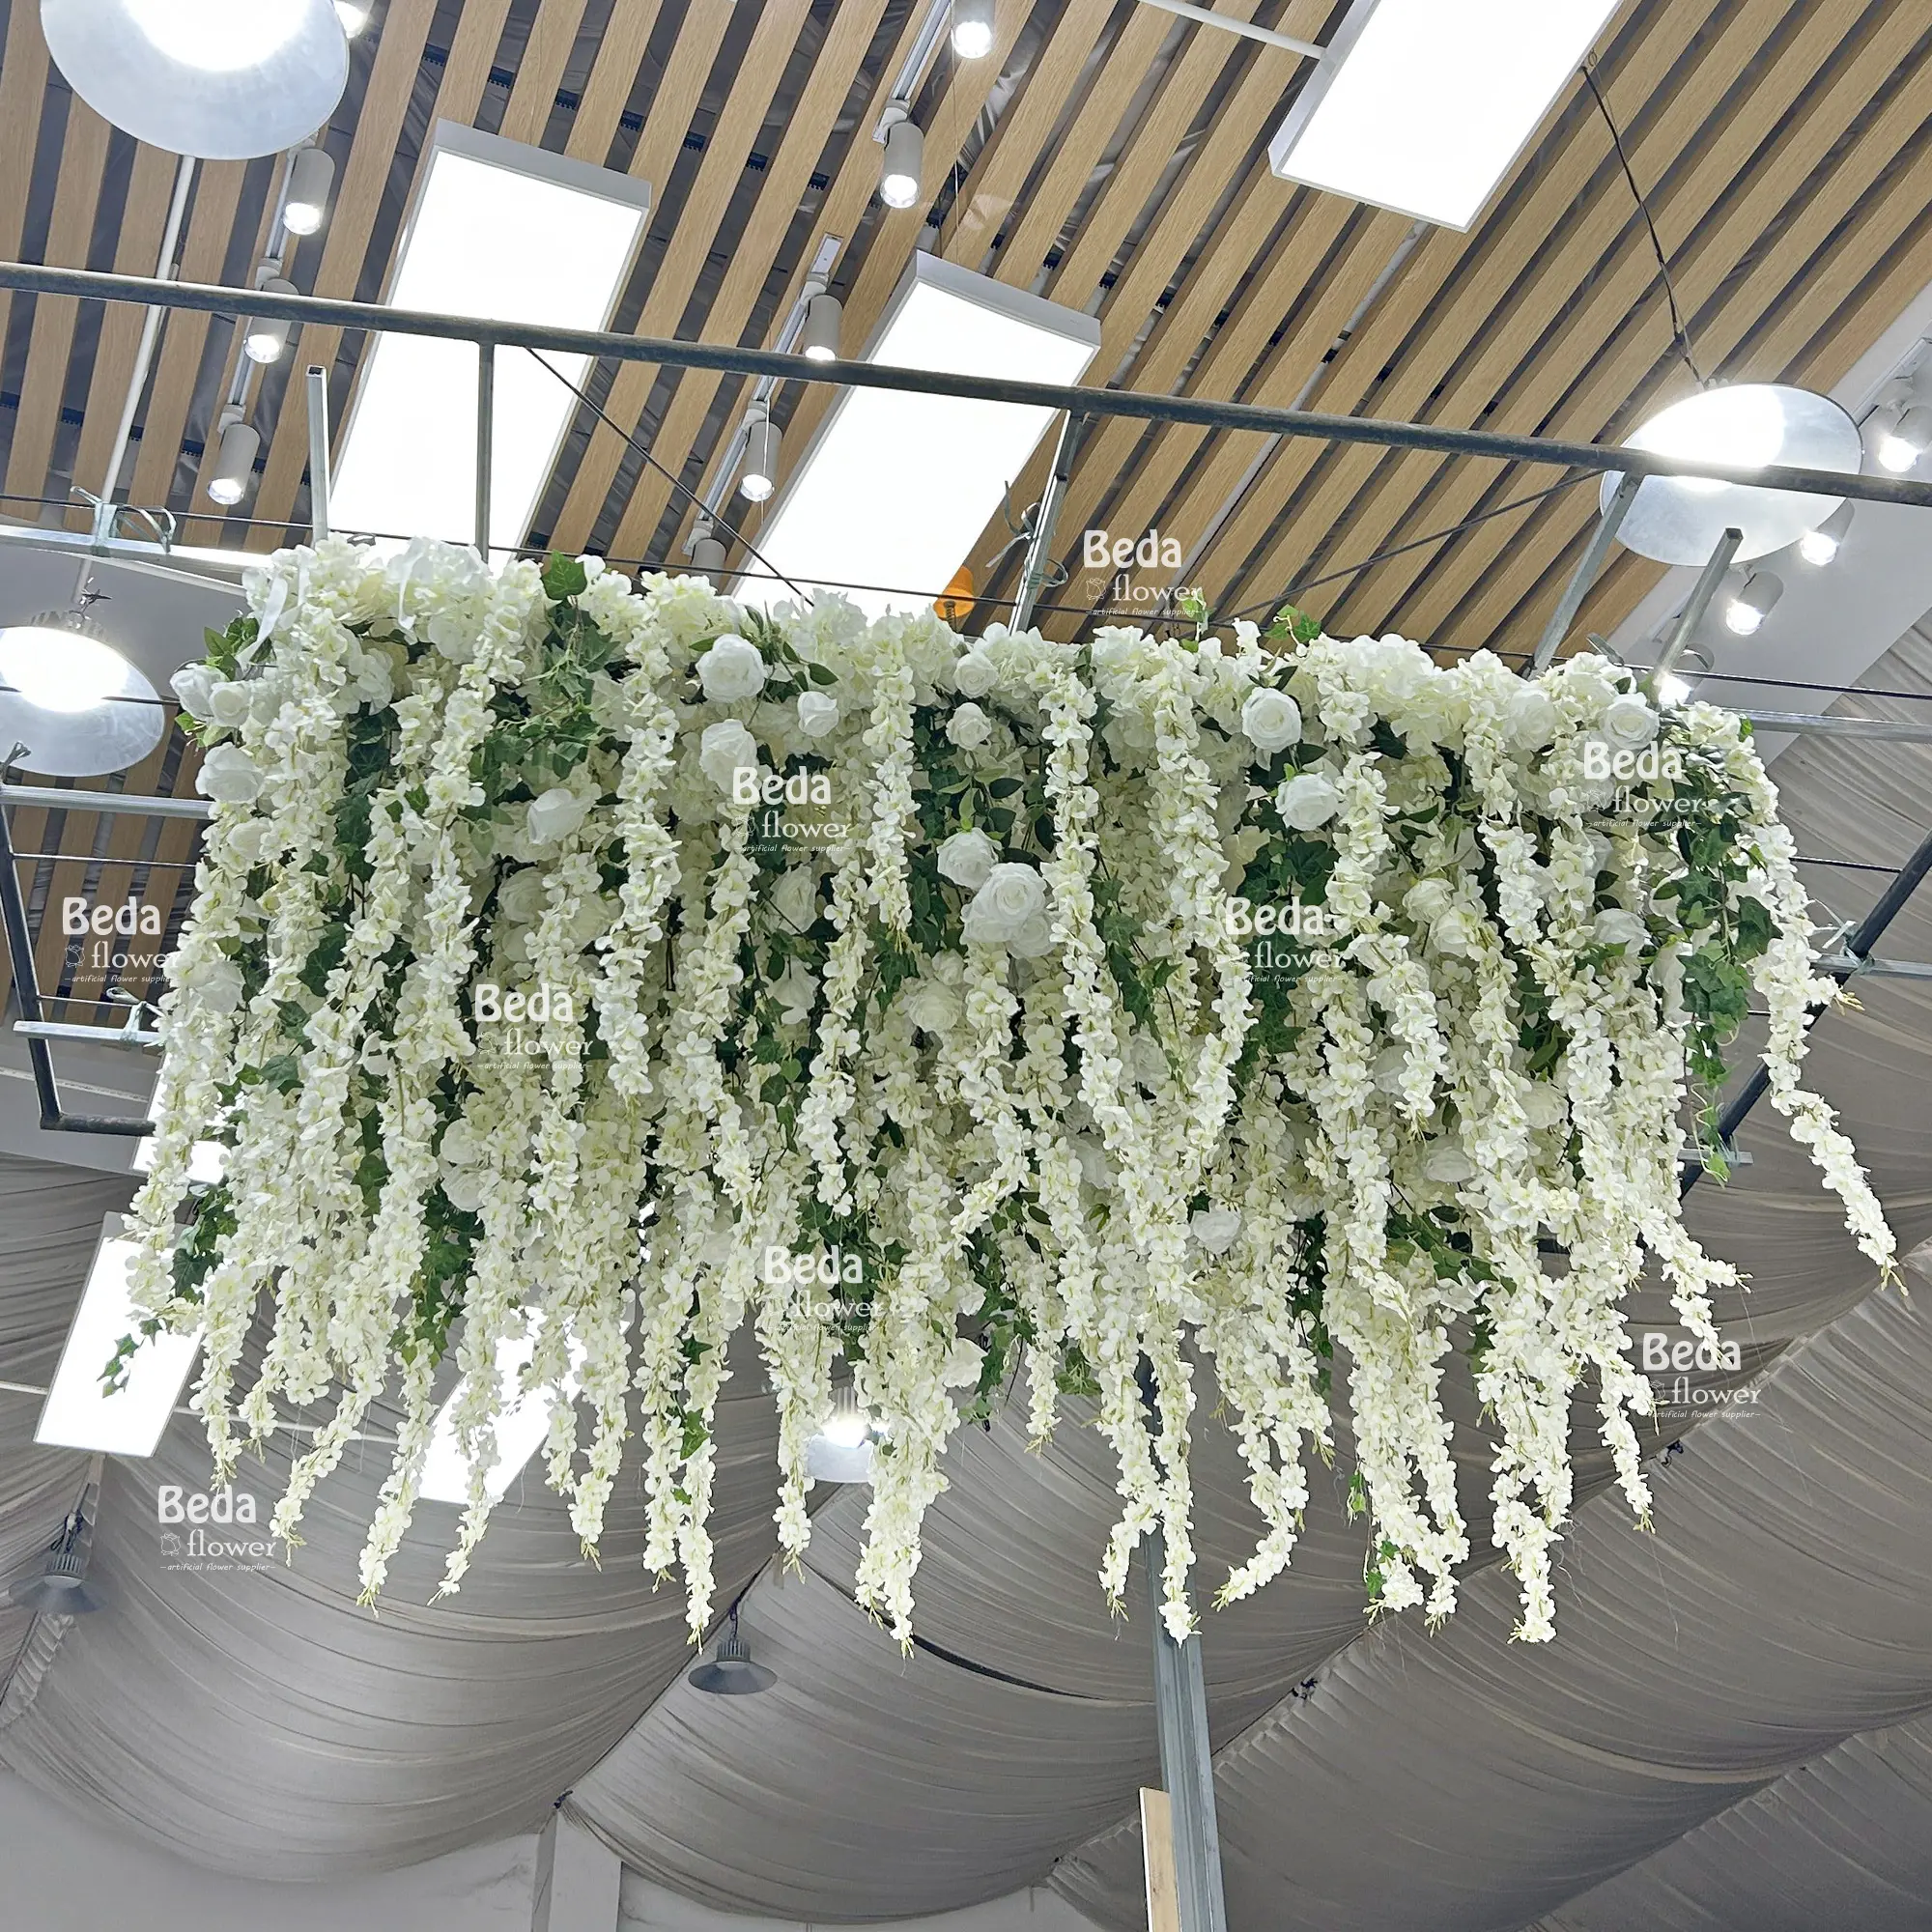 ホット造花結婚式の装飾結婚式の段階の装飾のために装飾的な天井をぶら下げている白いバラの藤